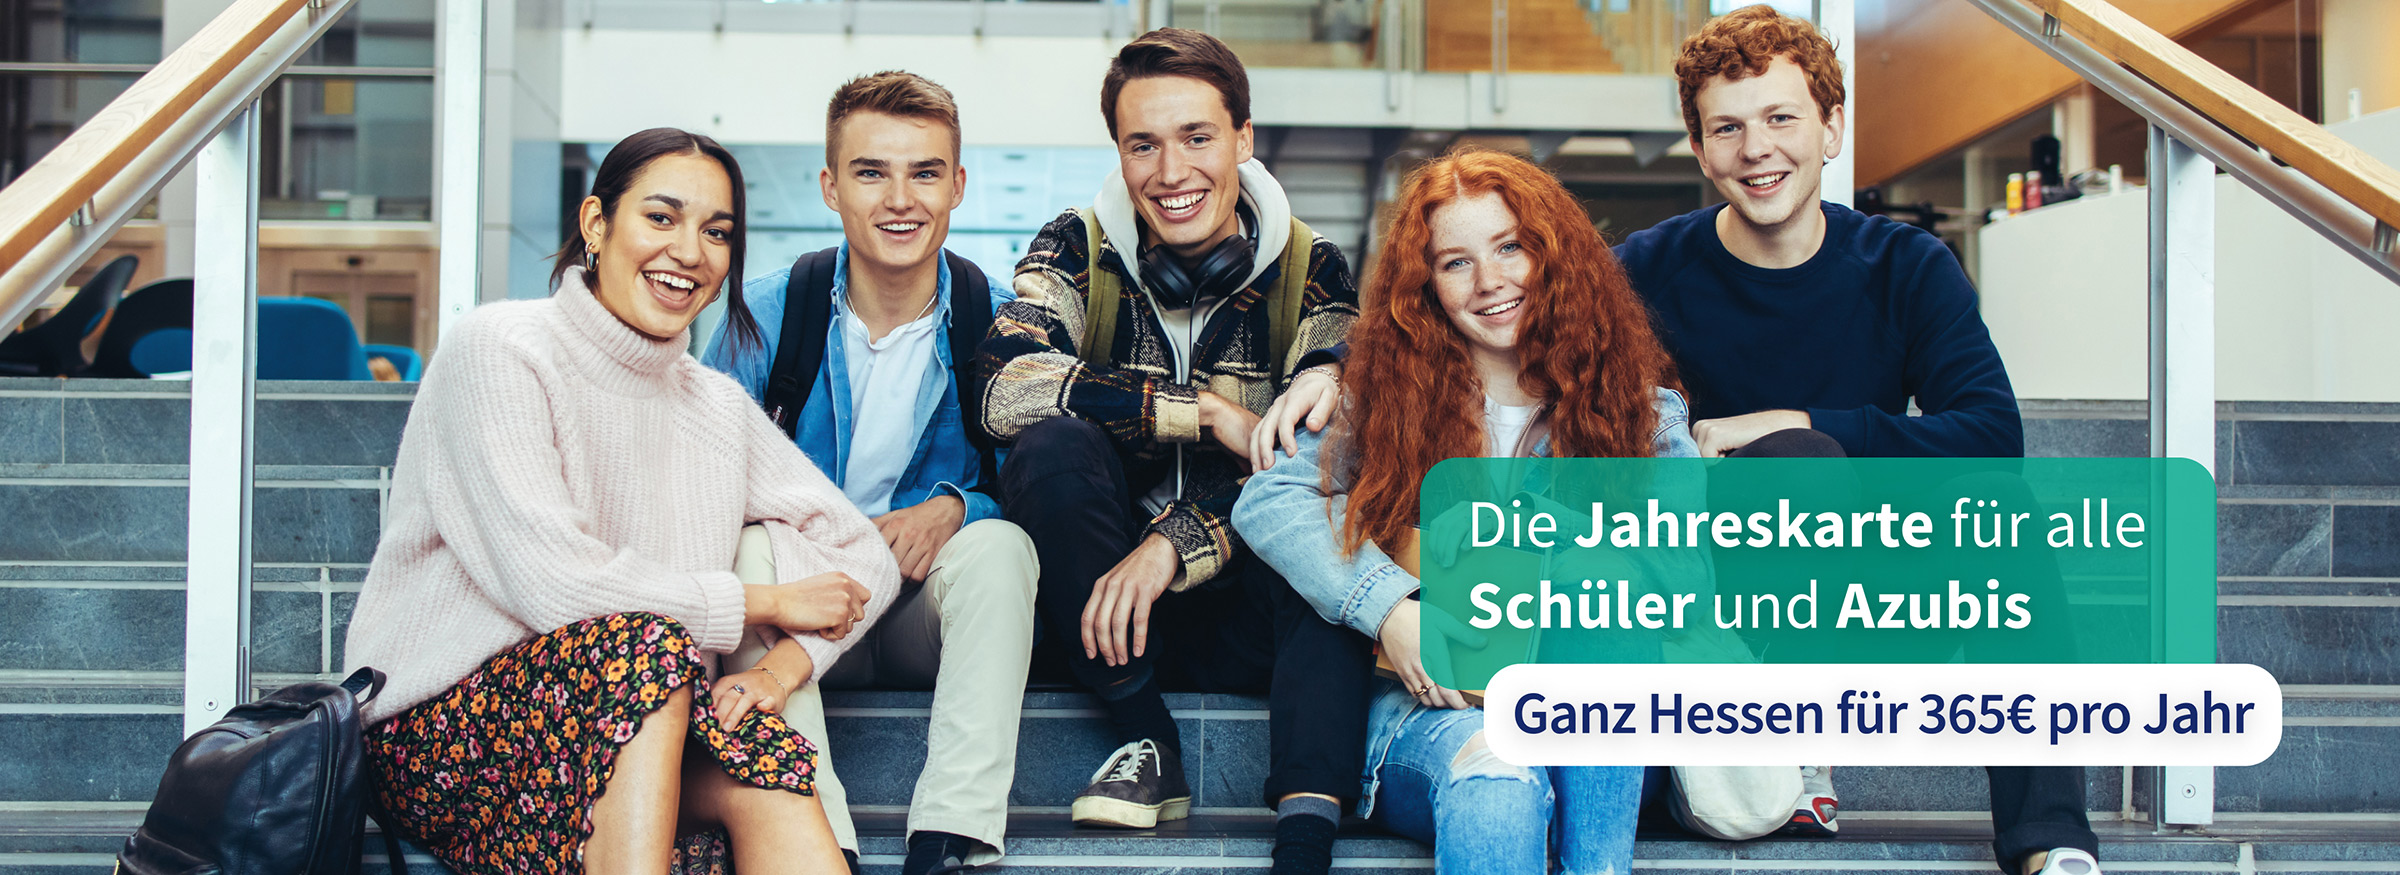 Foto von Schülern auf einer Treppe mit dem Text "Die Jahreskarte für alle Schüler und Azubis - Ganz Hessen für 365€ pro Jahr"